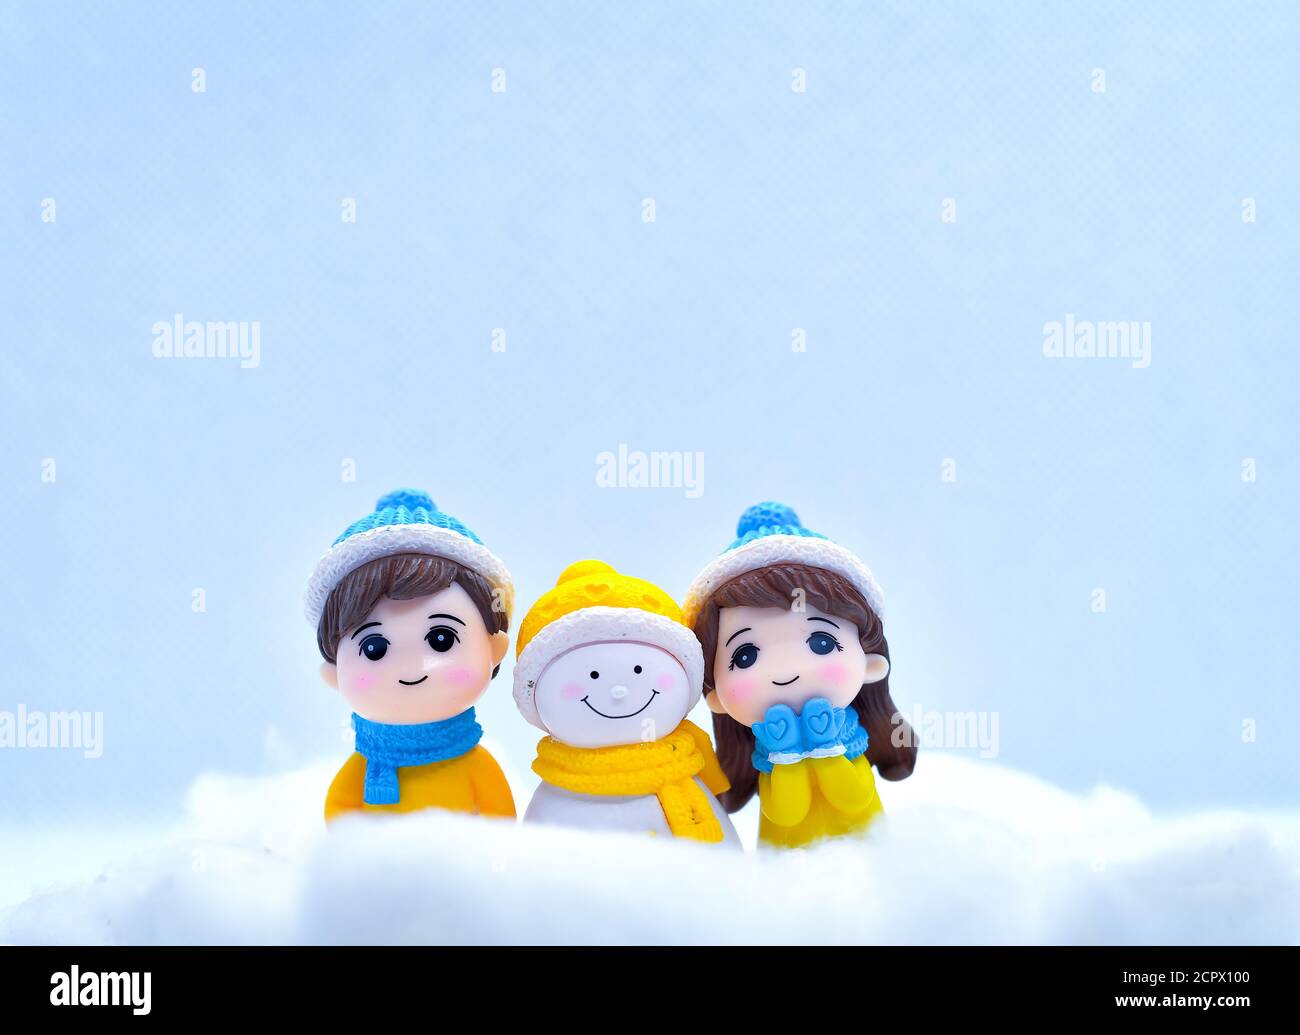 Tourisme et Voyage concept: Les personnes miniatures dans la neige d'hiver avec peu de bonhomme de neige Banque D'Images